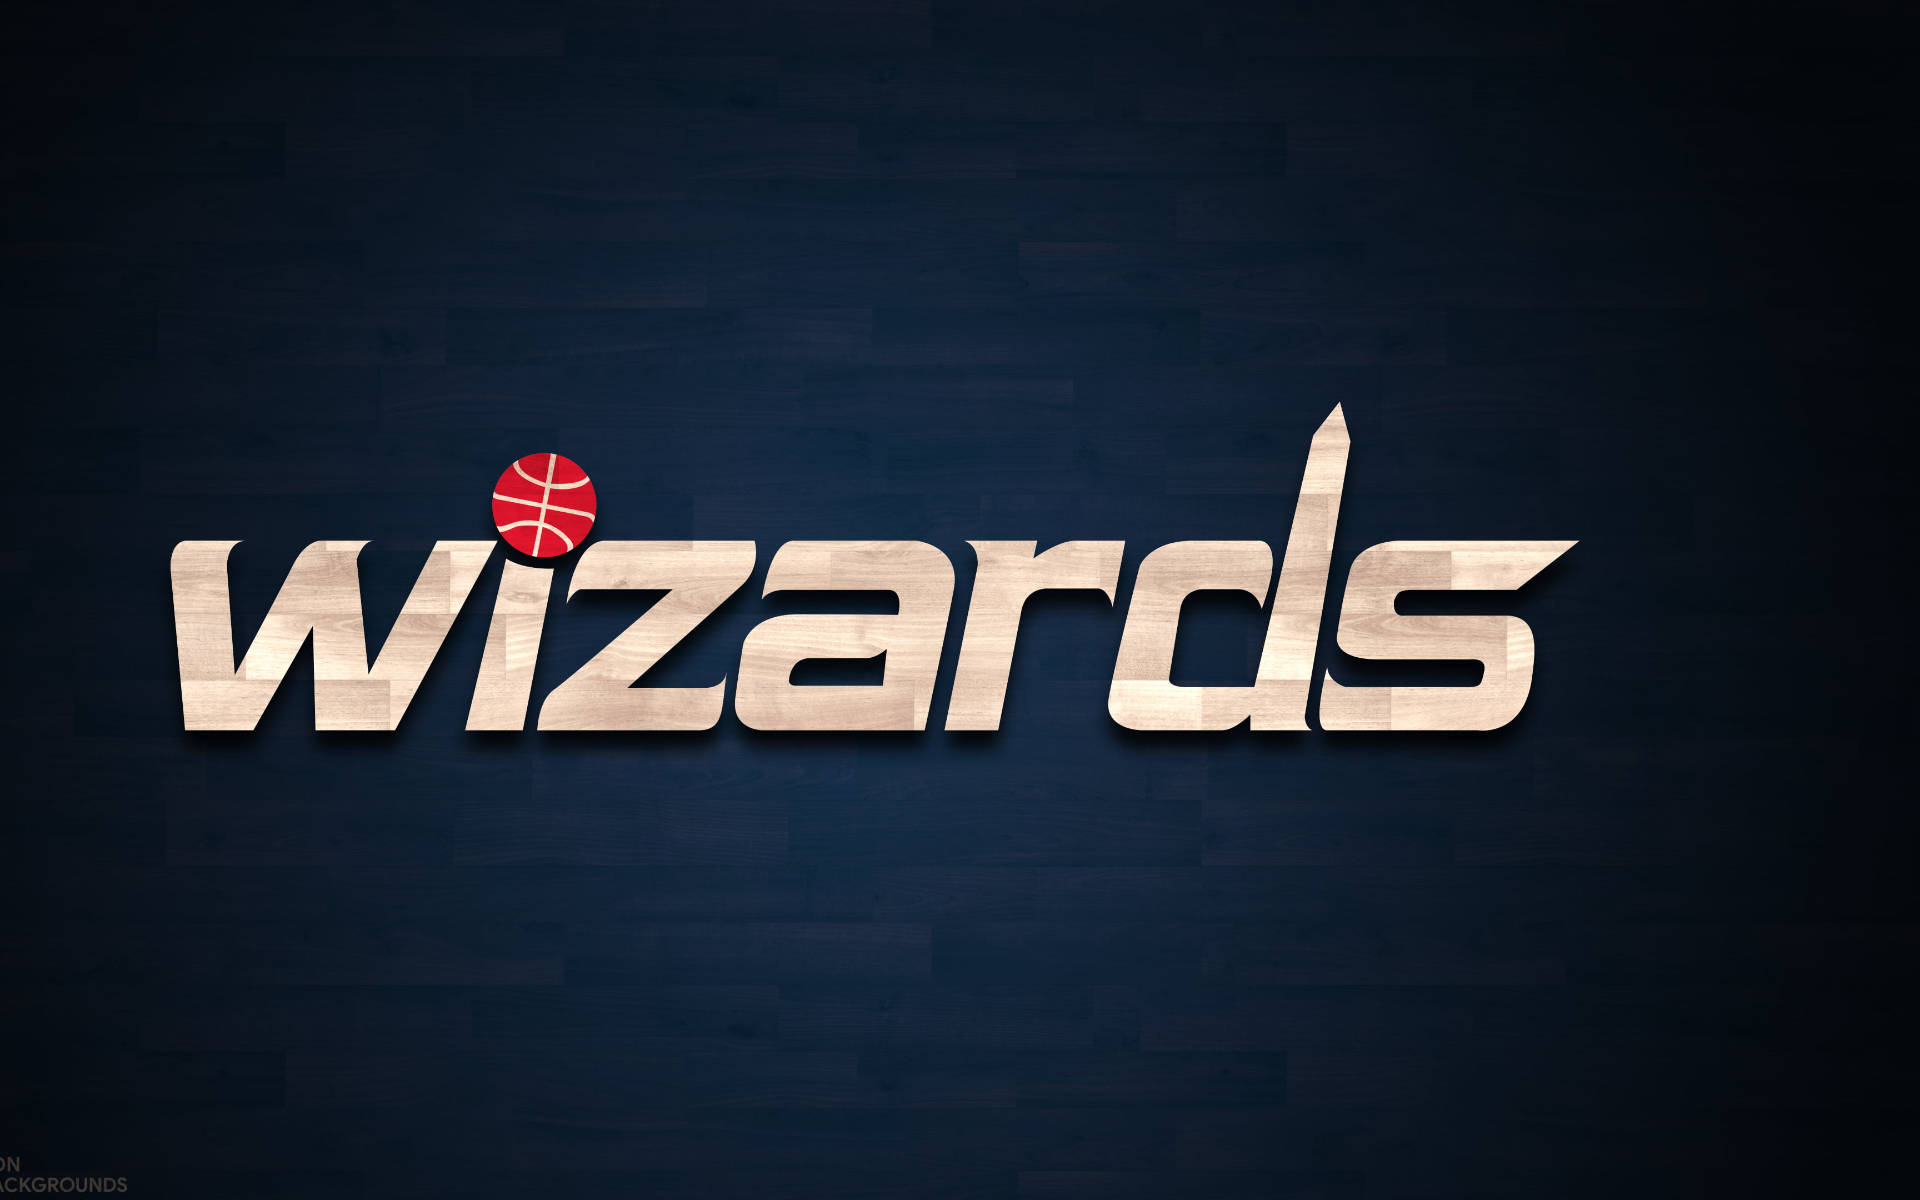 Washington Wizards Logo In Aesthetic Blue Background